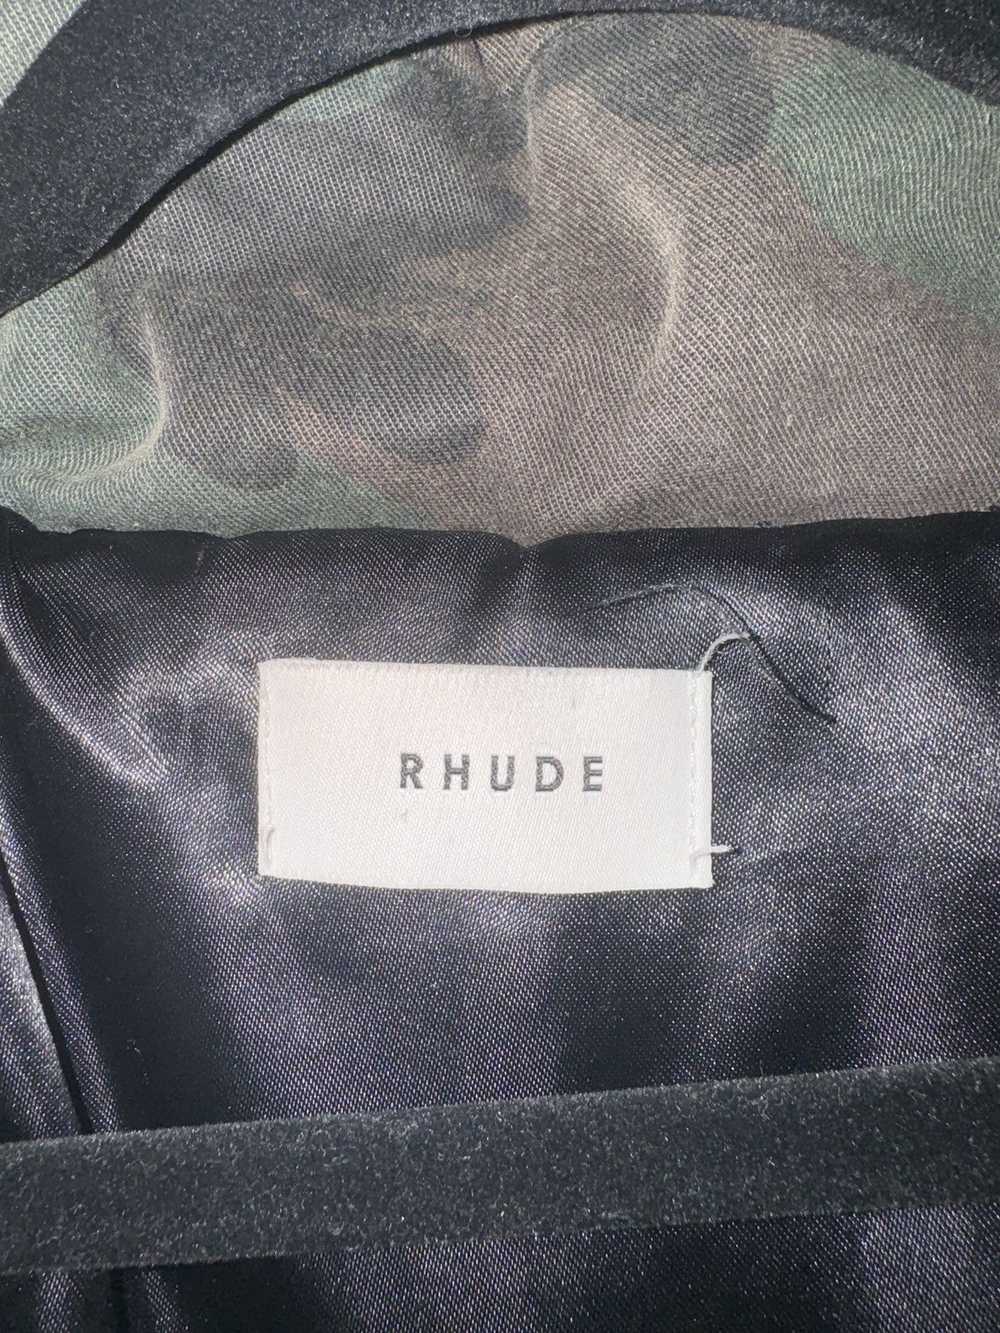 Rhude Rhude Oversized Camo Jacket - image 4